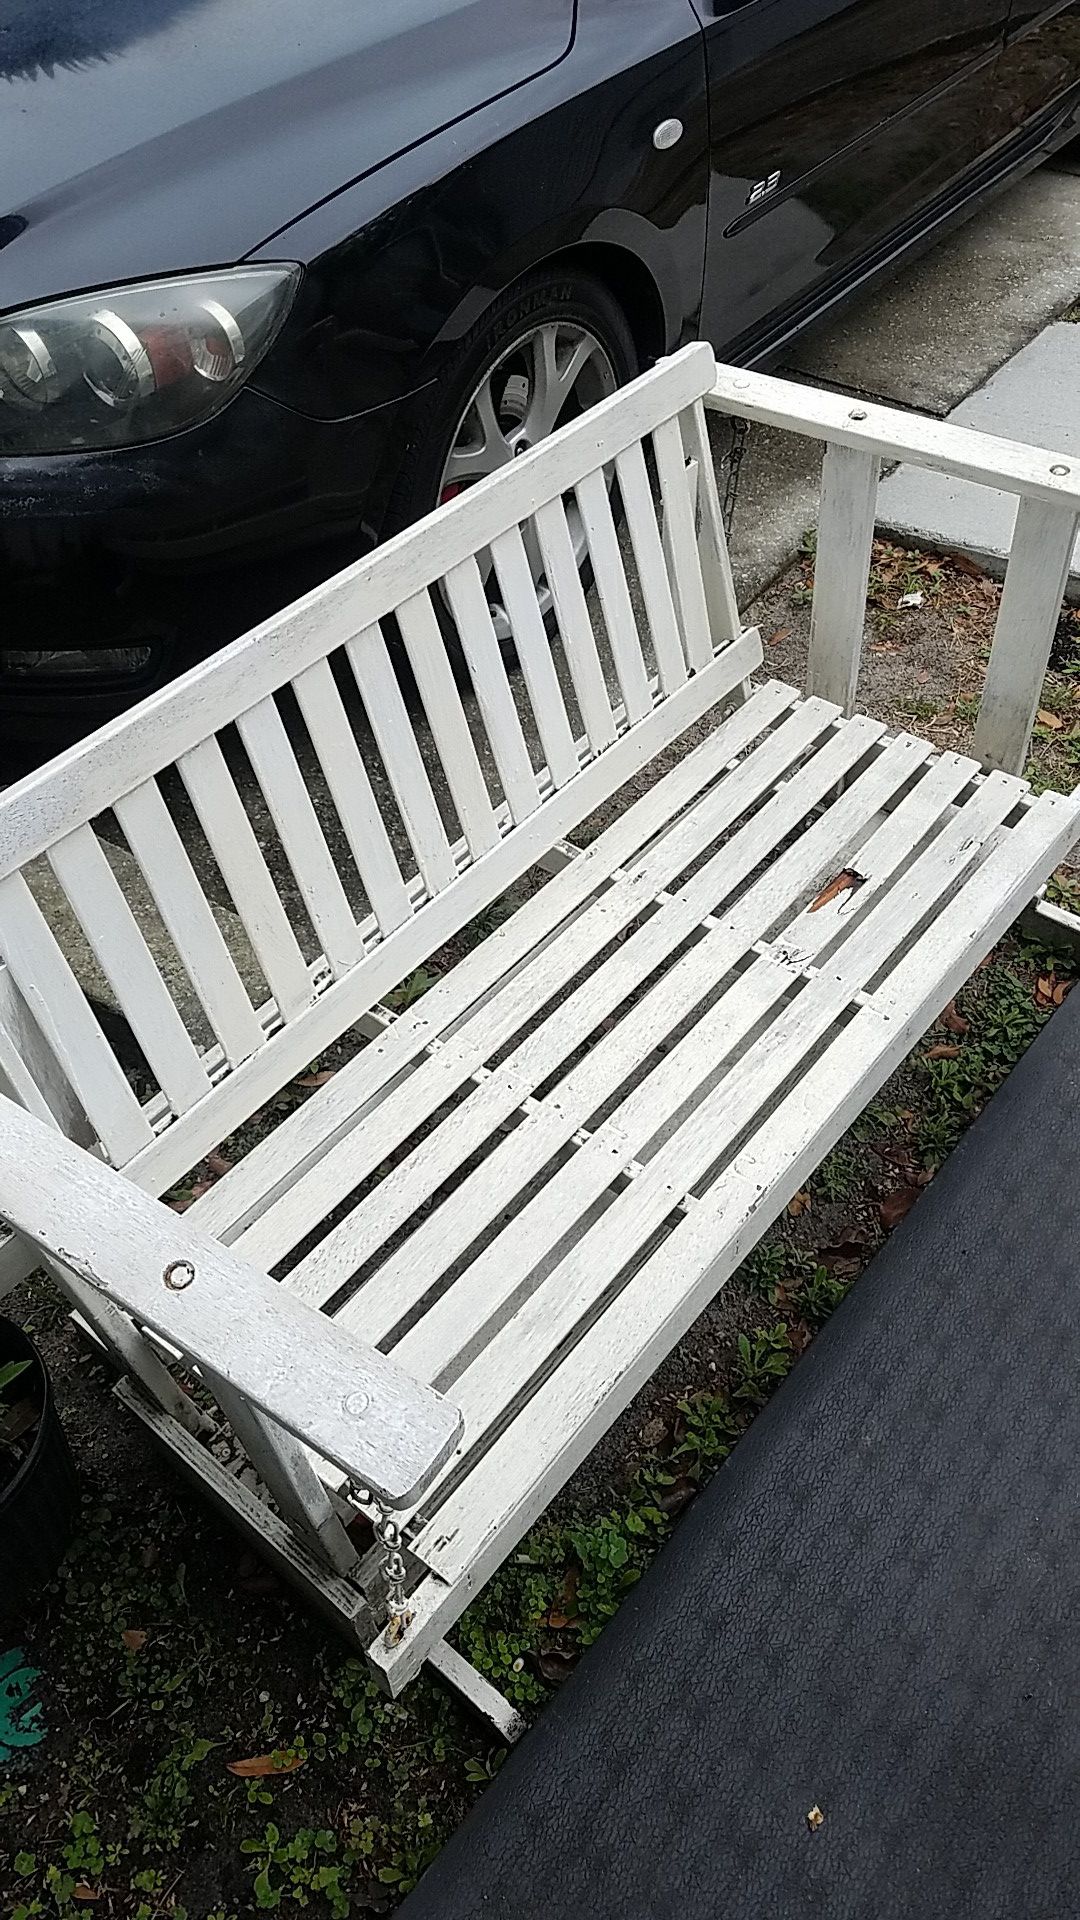 Porch swing bench